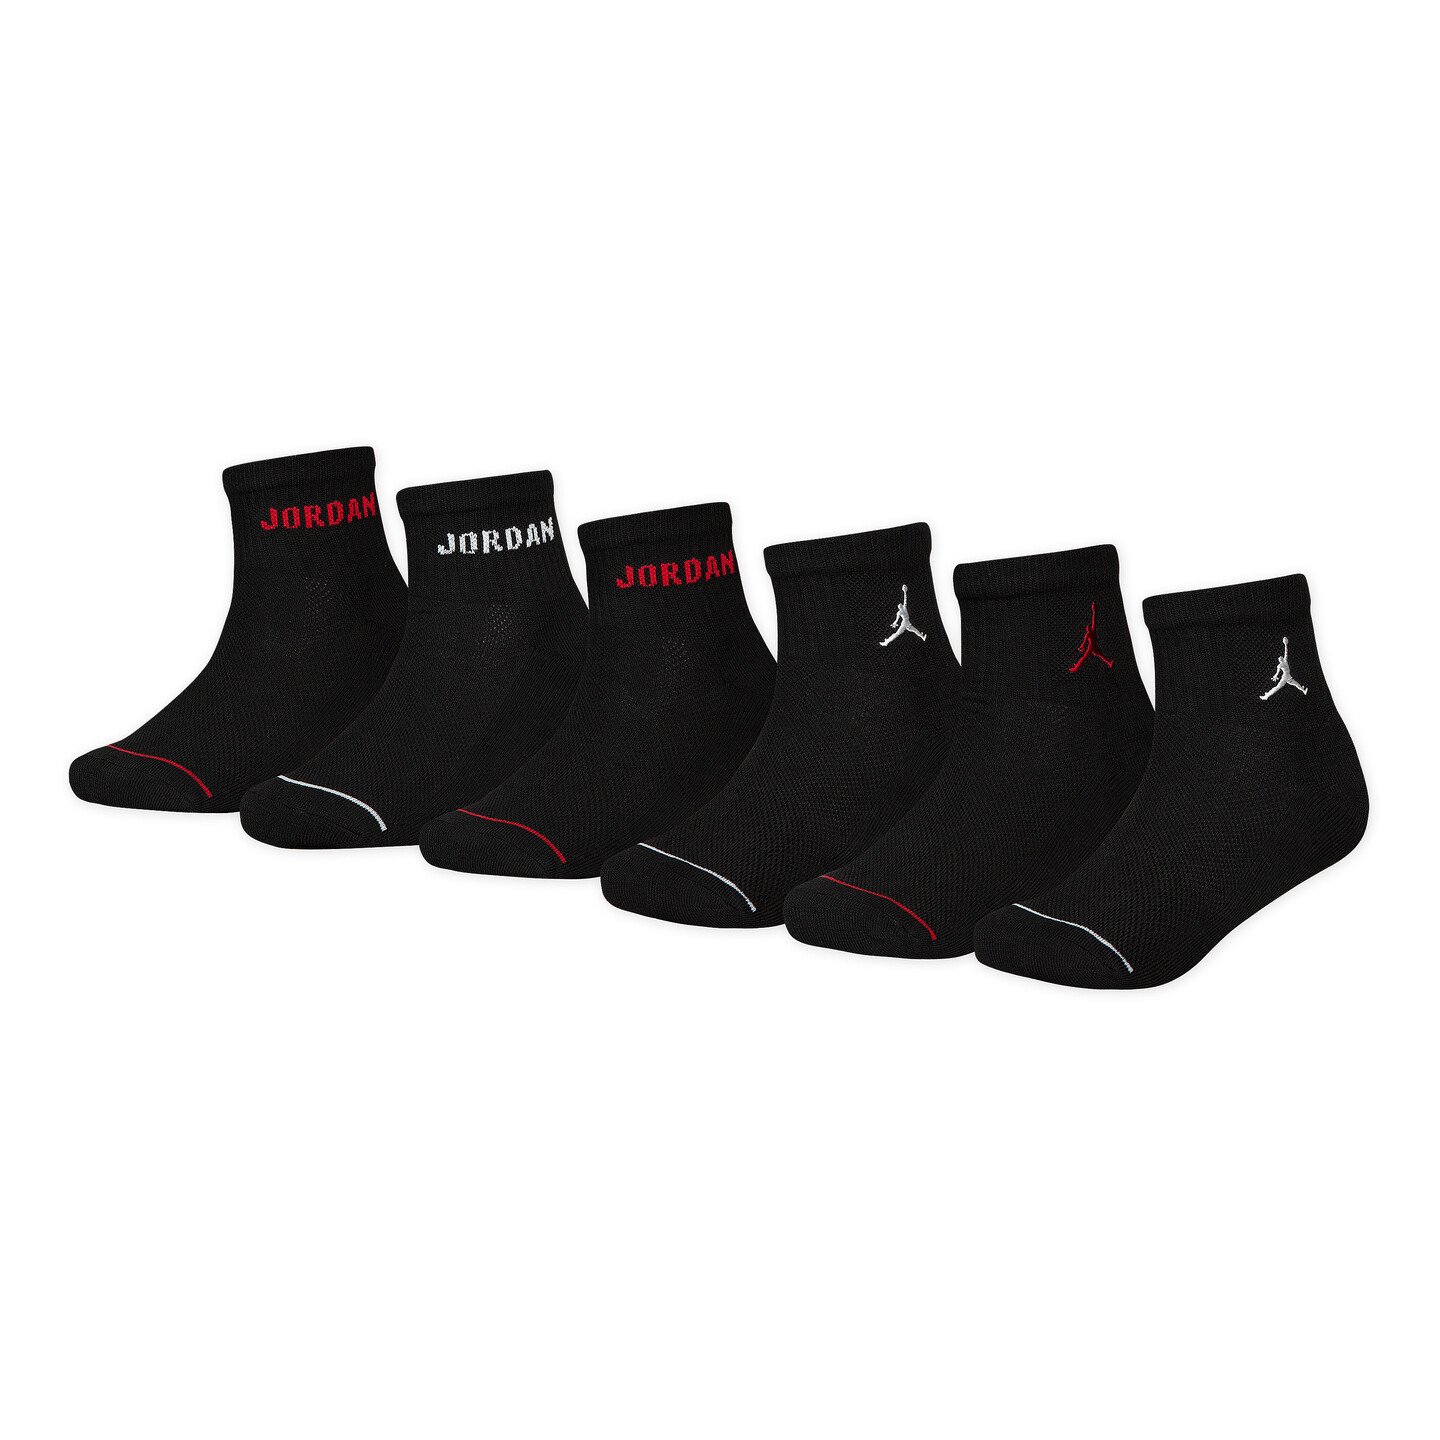 Air Jordan Kids 6pack Ankle Socks 'Black' BJ0342 023 - Sam Tabak